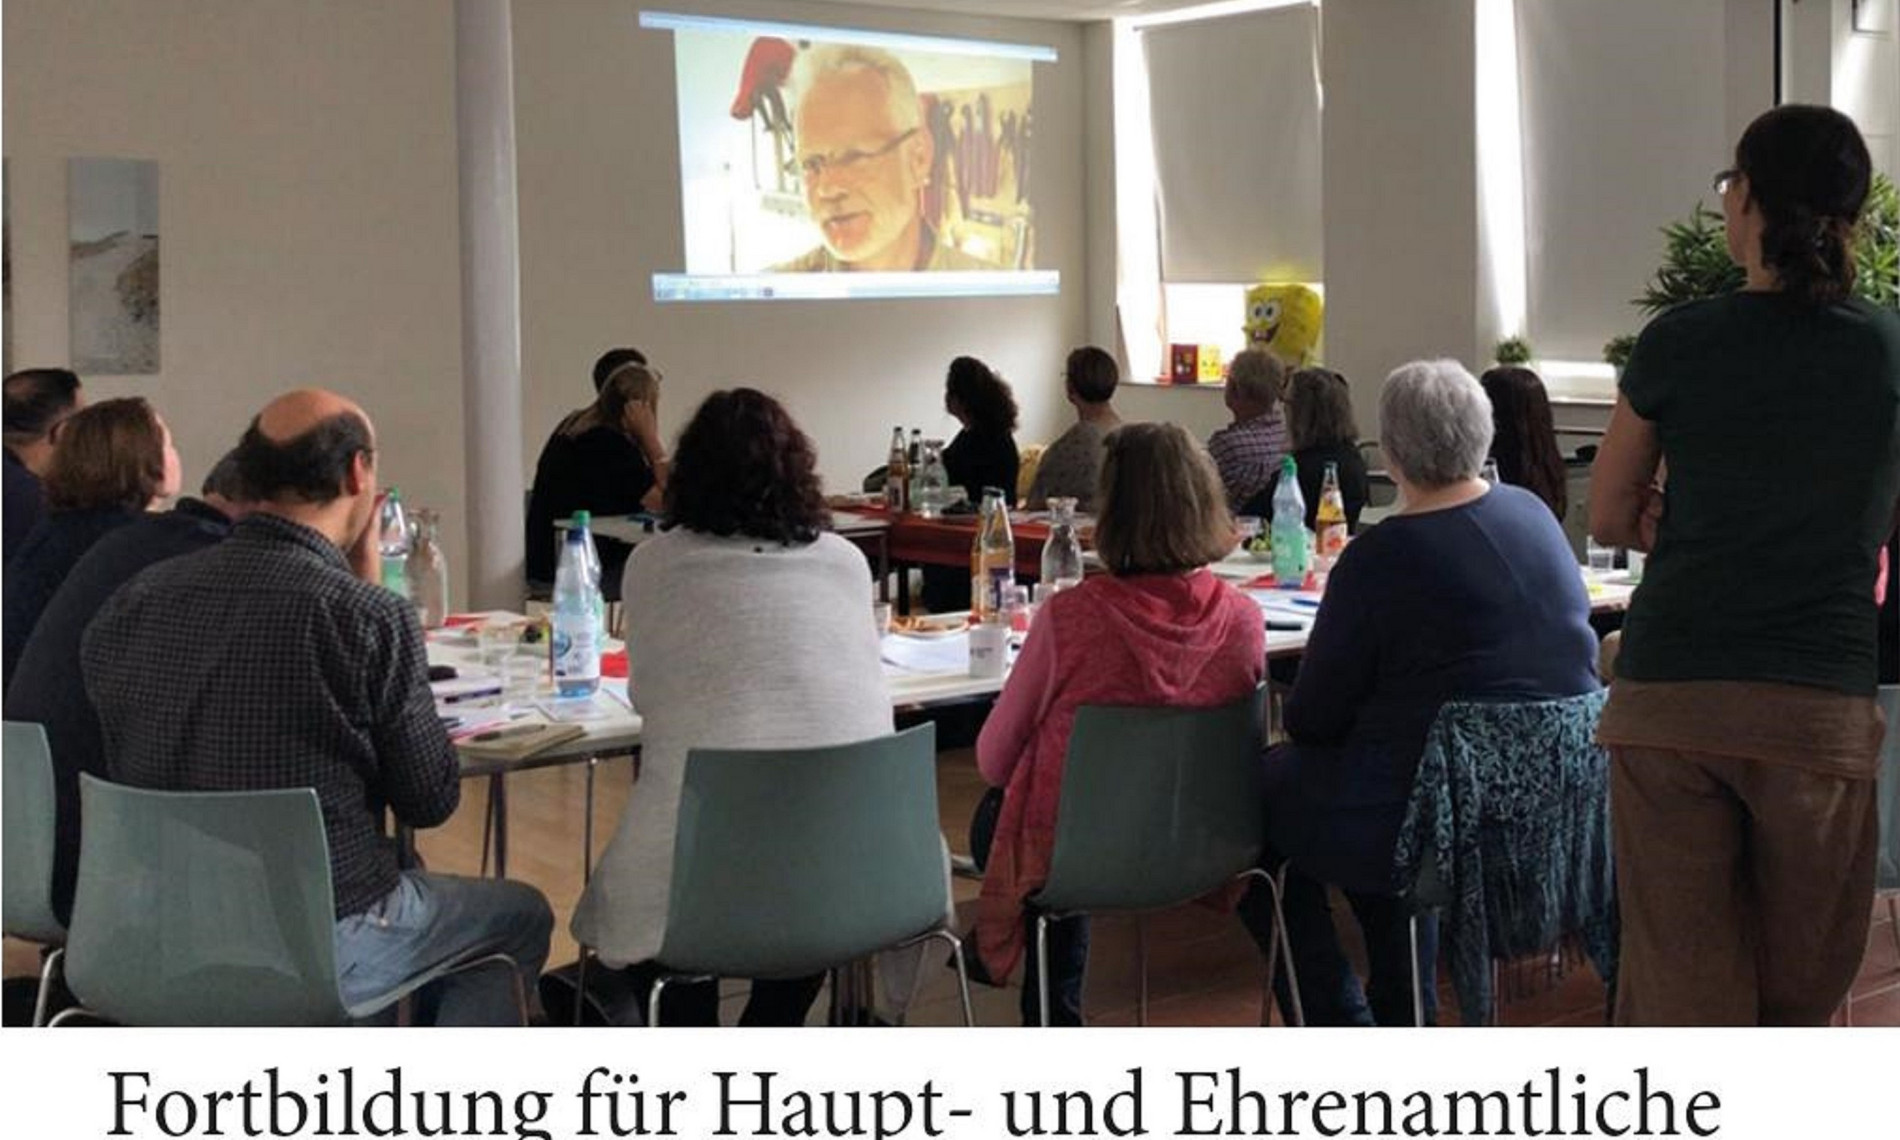 Fortbildungsveranstaltung im Projekt "Zusammen stark!" in Oldenburg